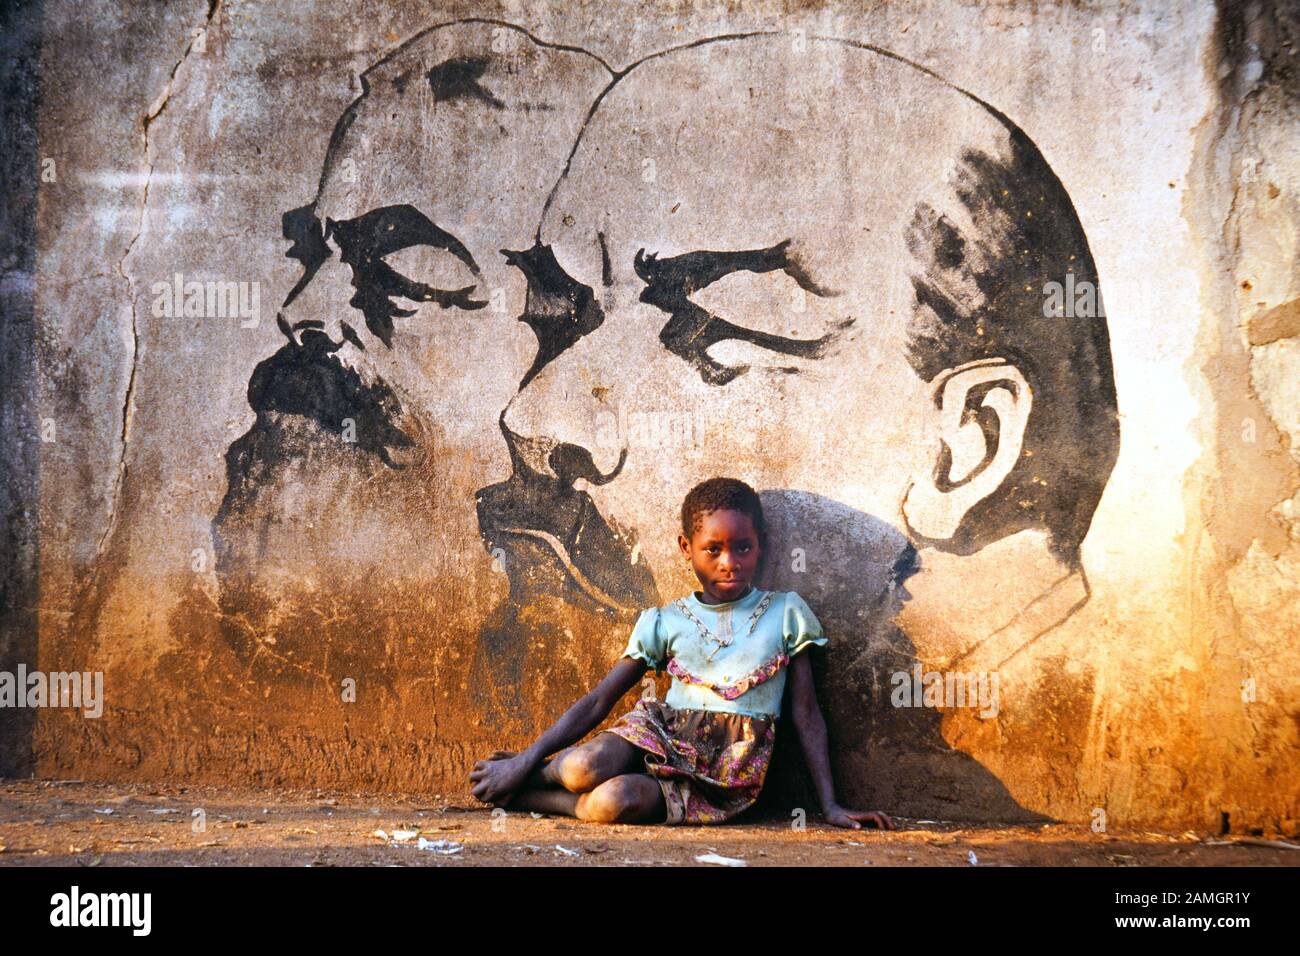 Foto vintage diapositiva de 35 mm de 1993: La niña africana se sienta frente a un cuadro mural que muestra a los líderes comunistas Marx y Lenin. Aldea de Quelimane en la provincia de Tete, Mozambique, África Foto de stock